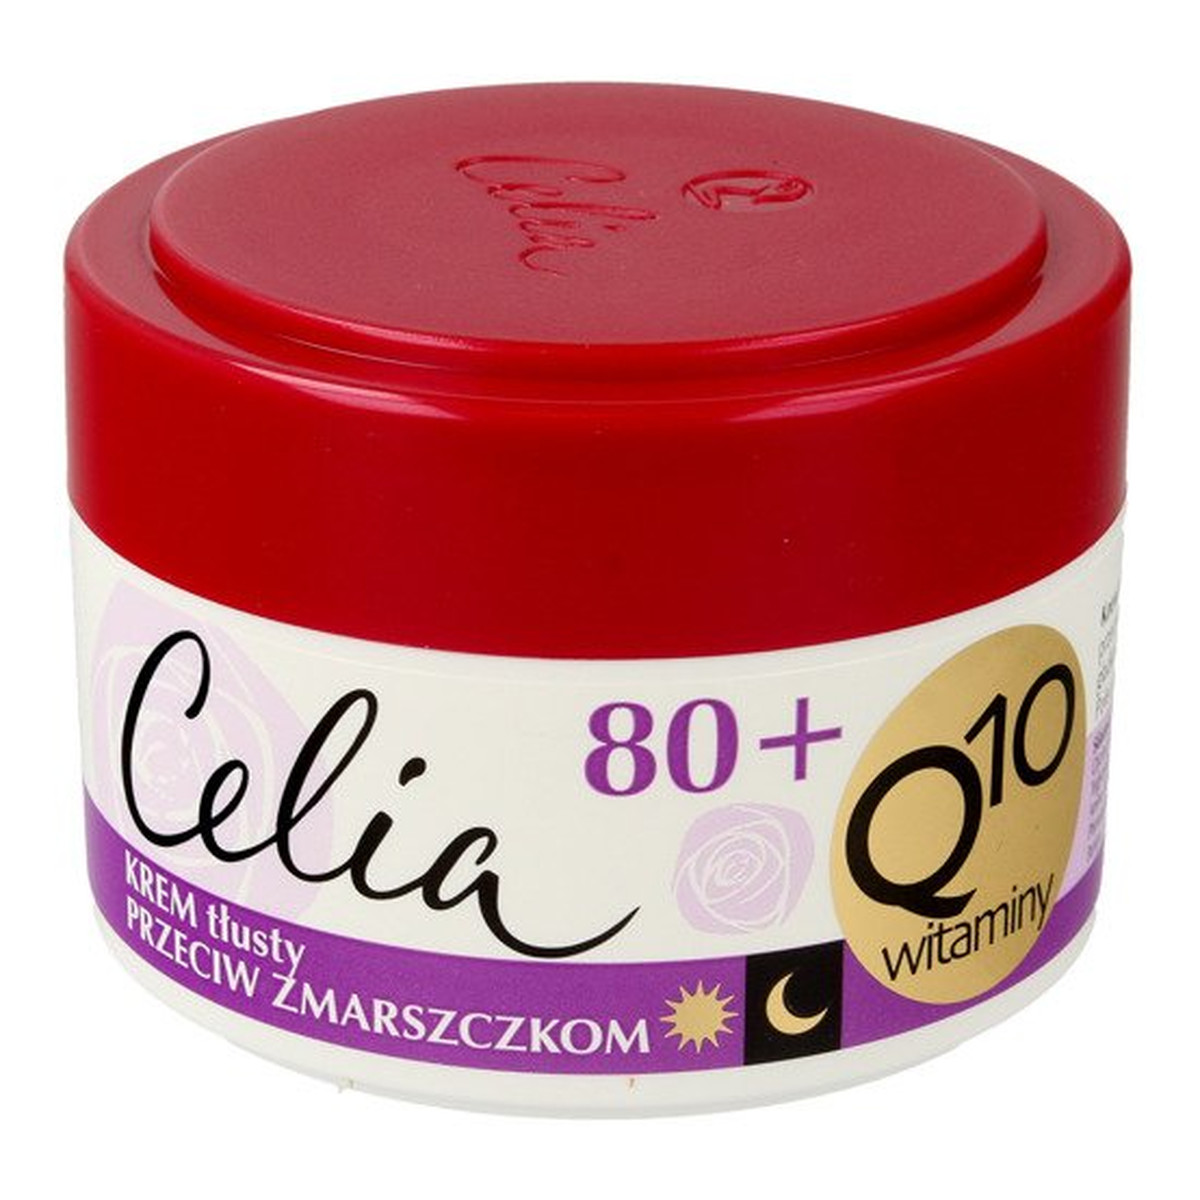 Celia Q10 Witaminy 80+ krem tłusty przeciw zmarszczkom z elastyną na dzień i noc 50ml